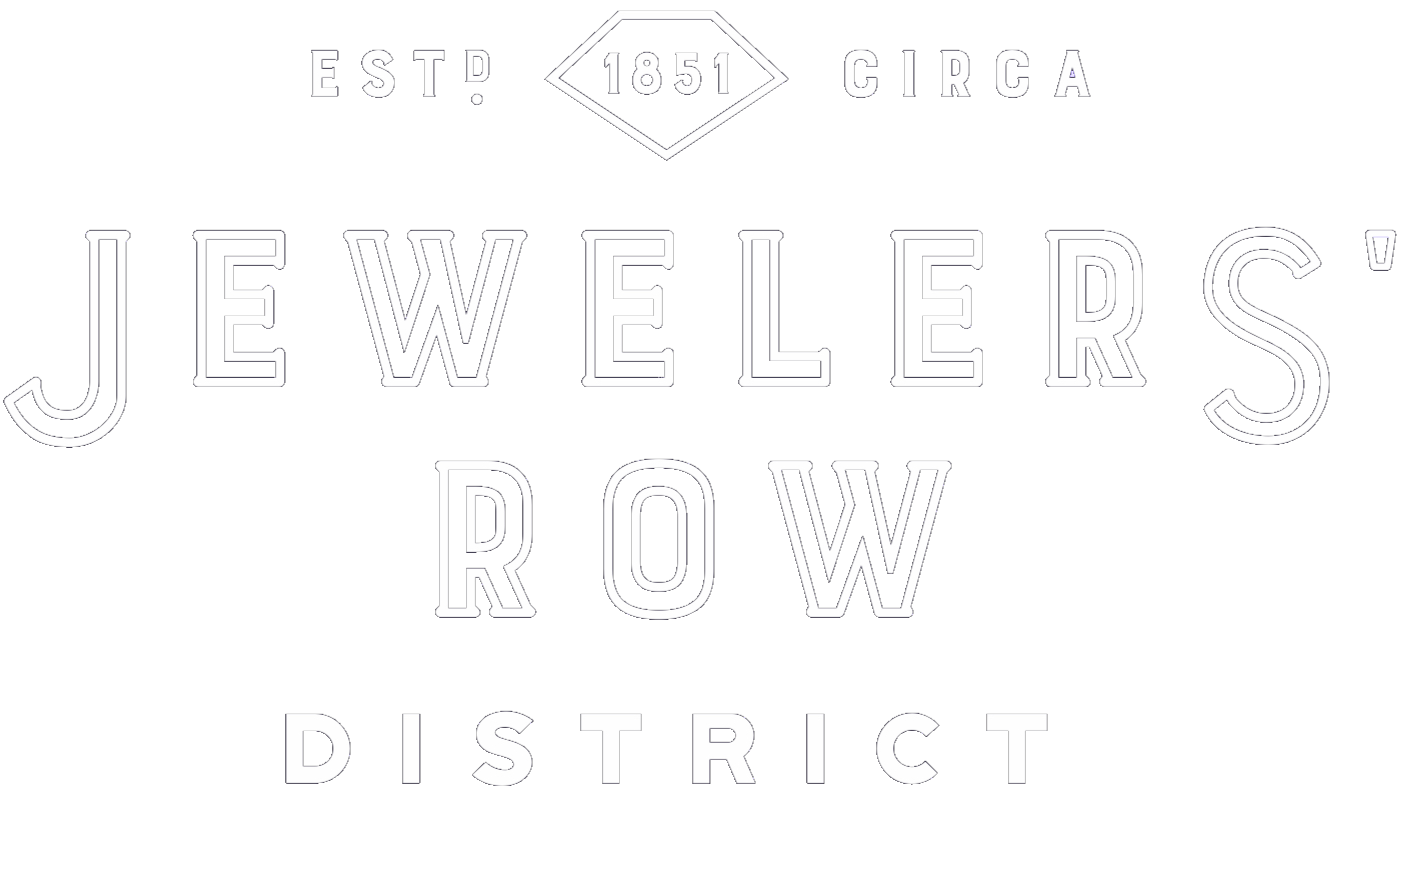 Philadelphia Jewelers' Row District